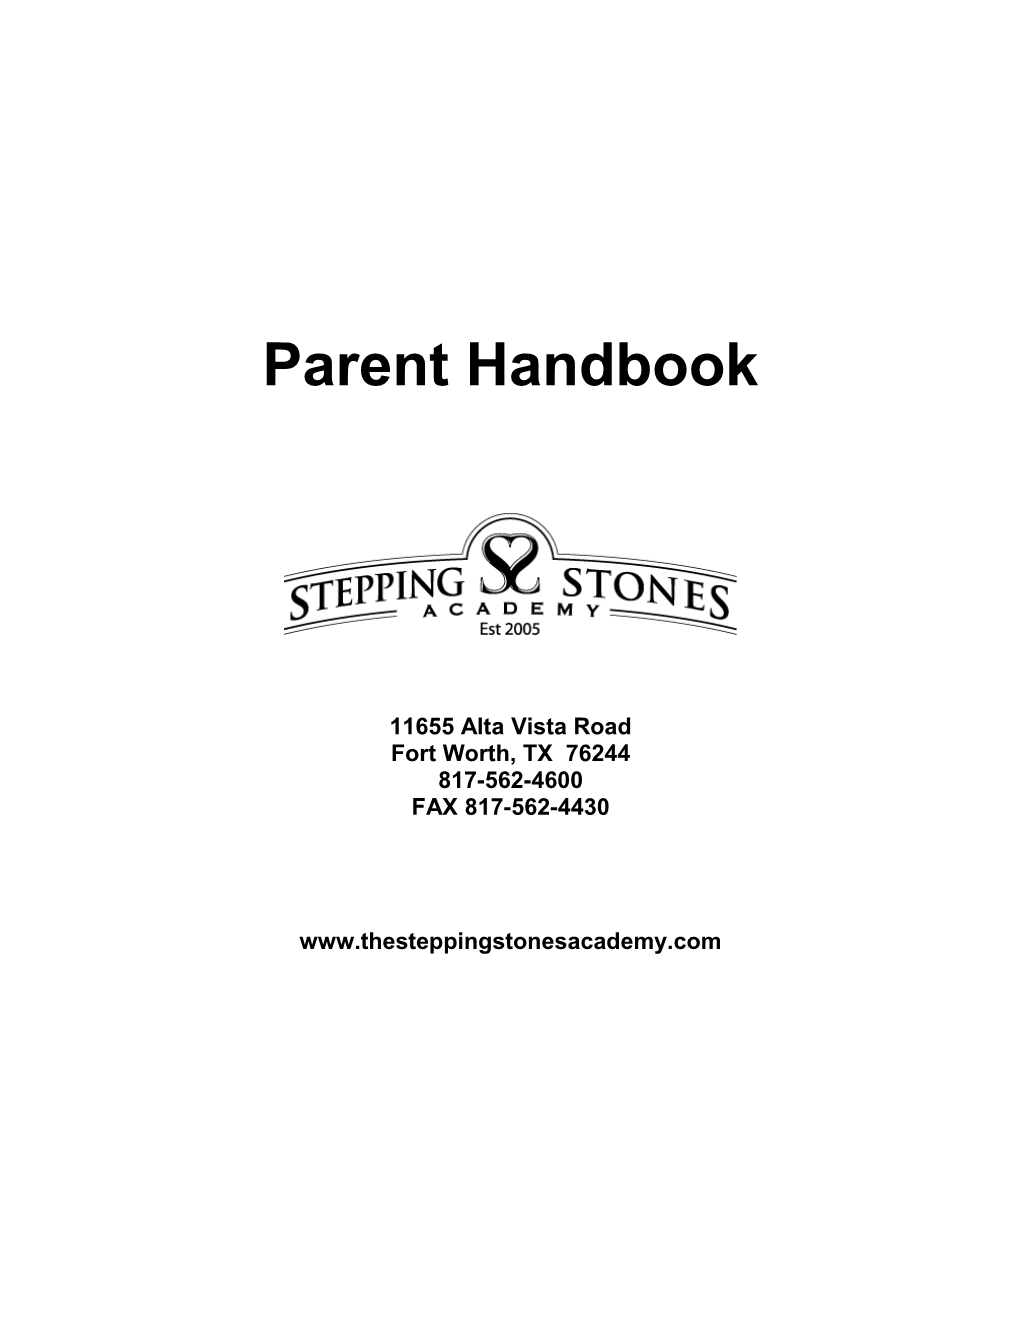 Preschool Parent Handbook